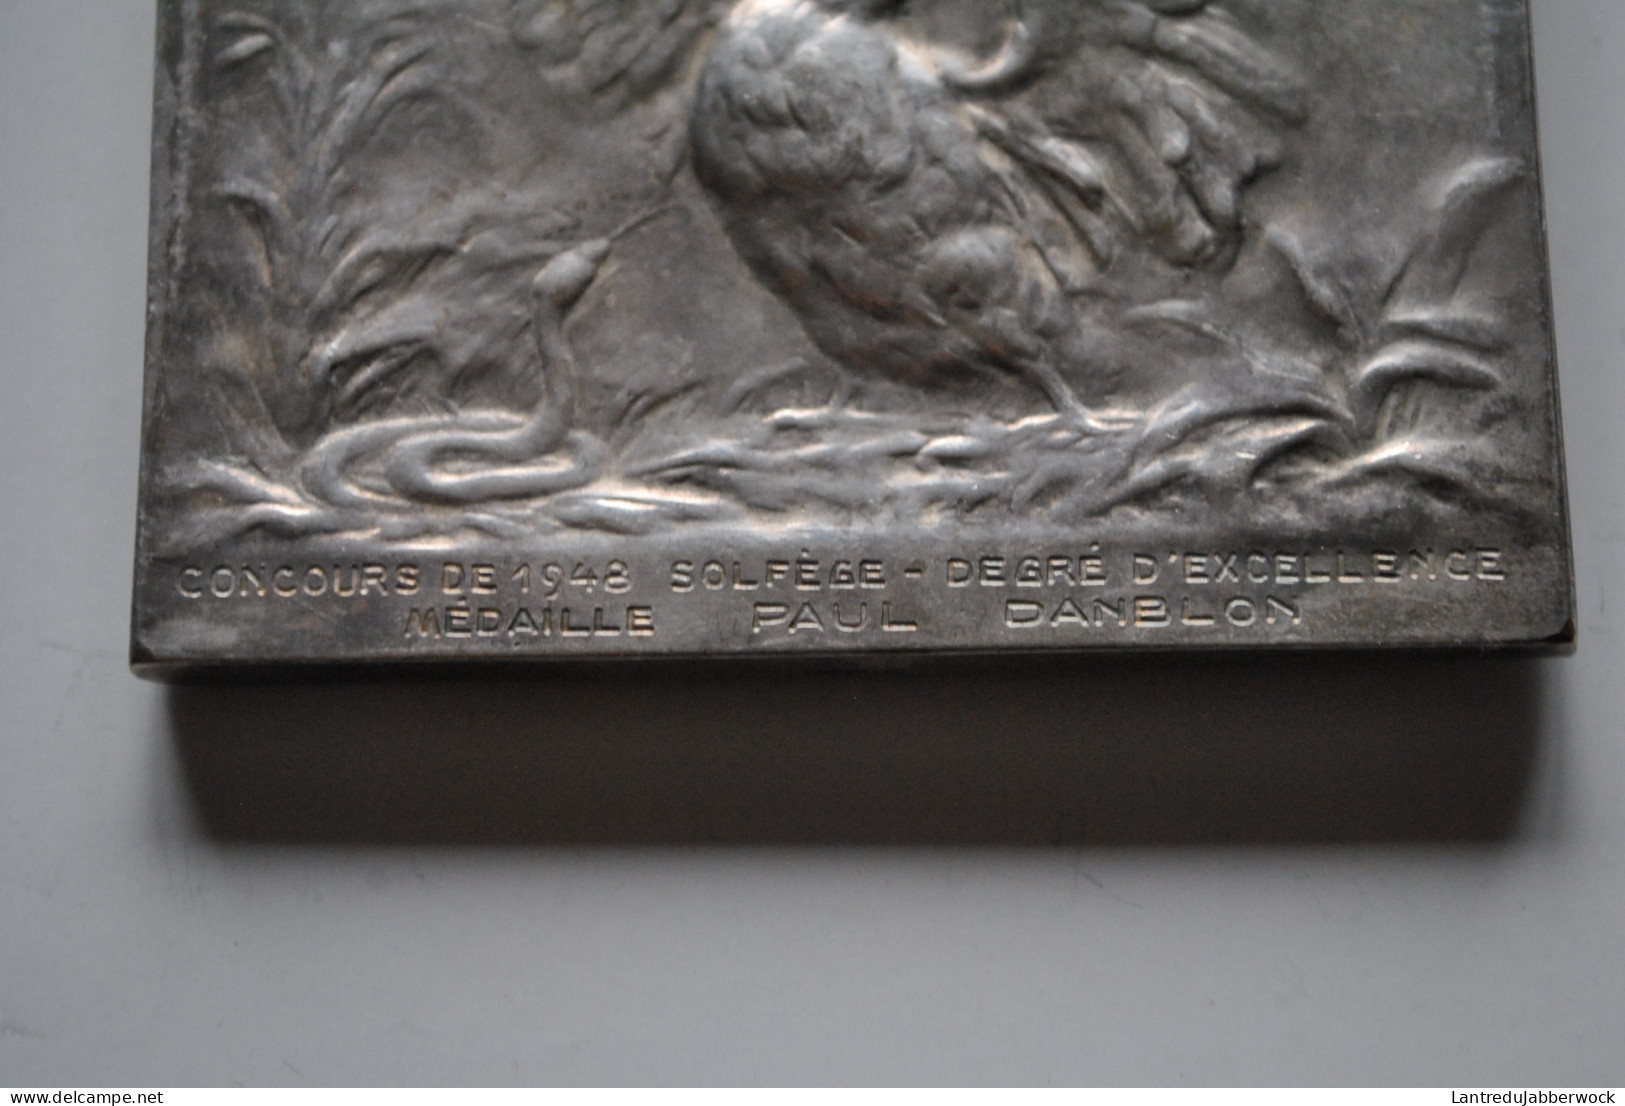 Médaille En Bronze Argenté Ecole De Musique De Saint Josse Ten Noode Schaerbeek Concours 1948 De Solfège Paul Danblon - Tokens Of Communes